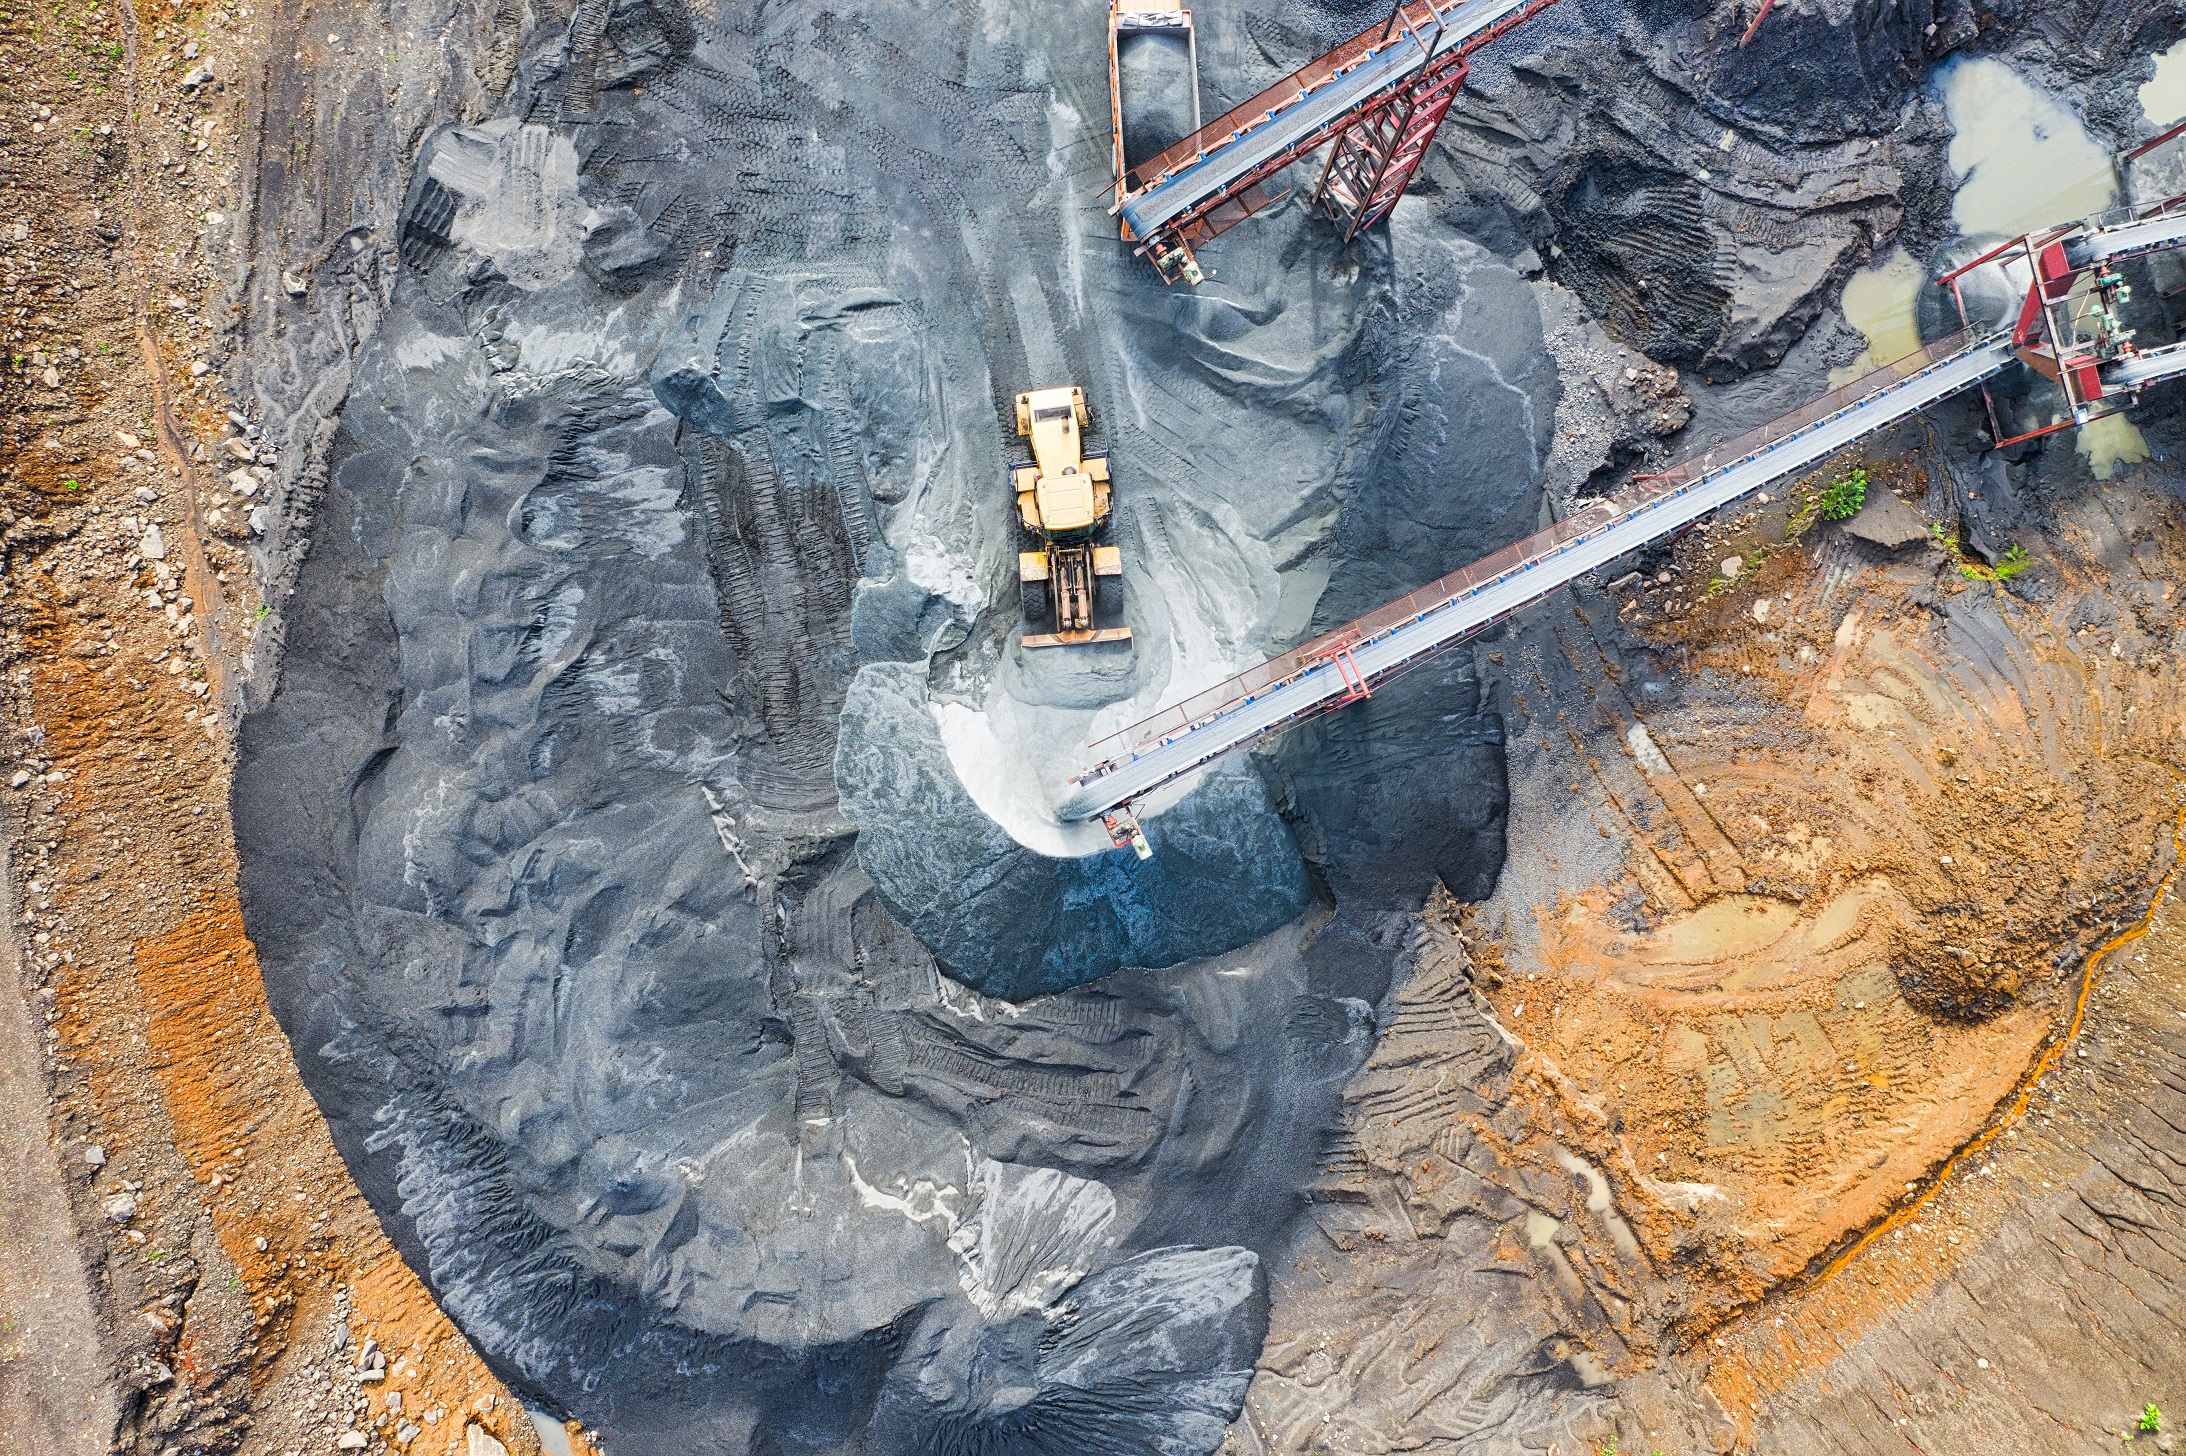 Minera peruana compró depósito de tierras raras en Chile por US$ 56 millones a fondo ligado a LarrainVial